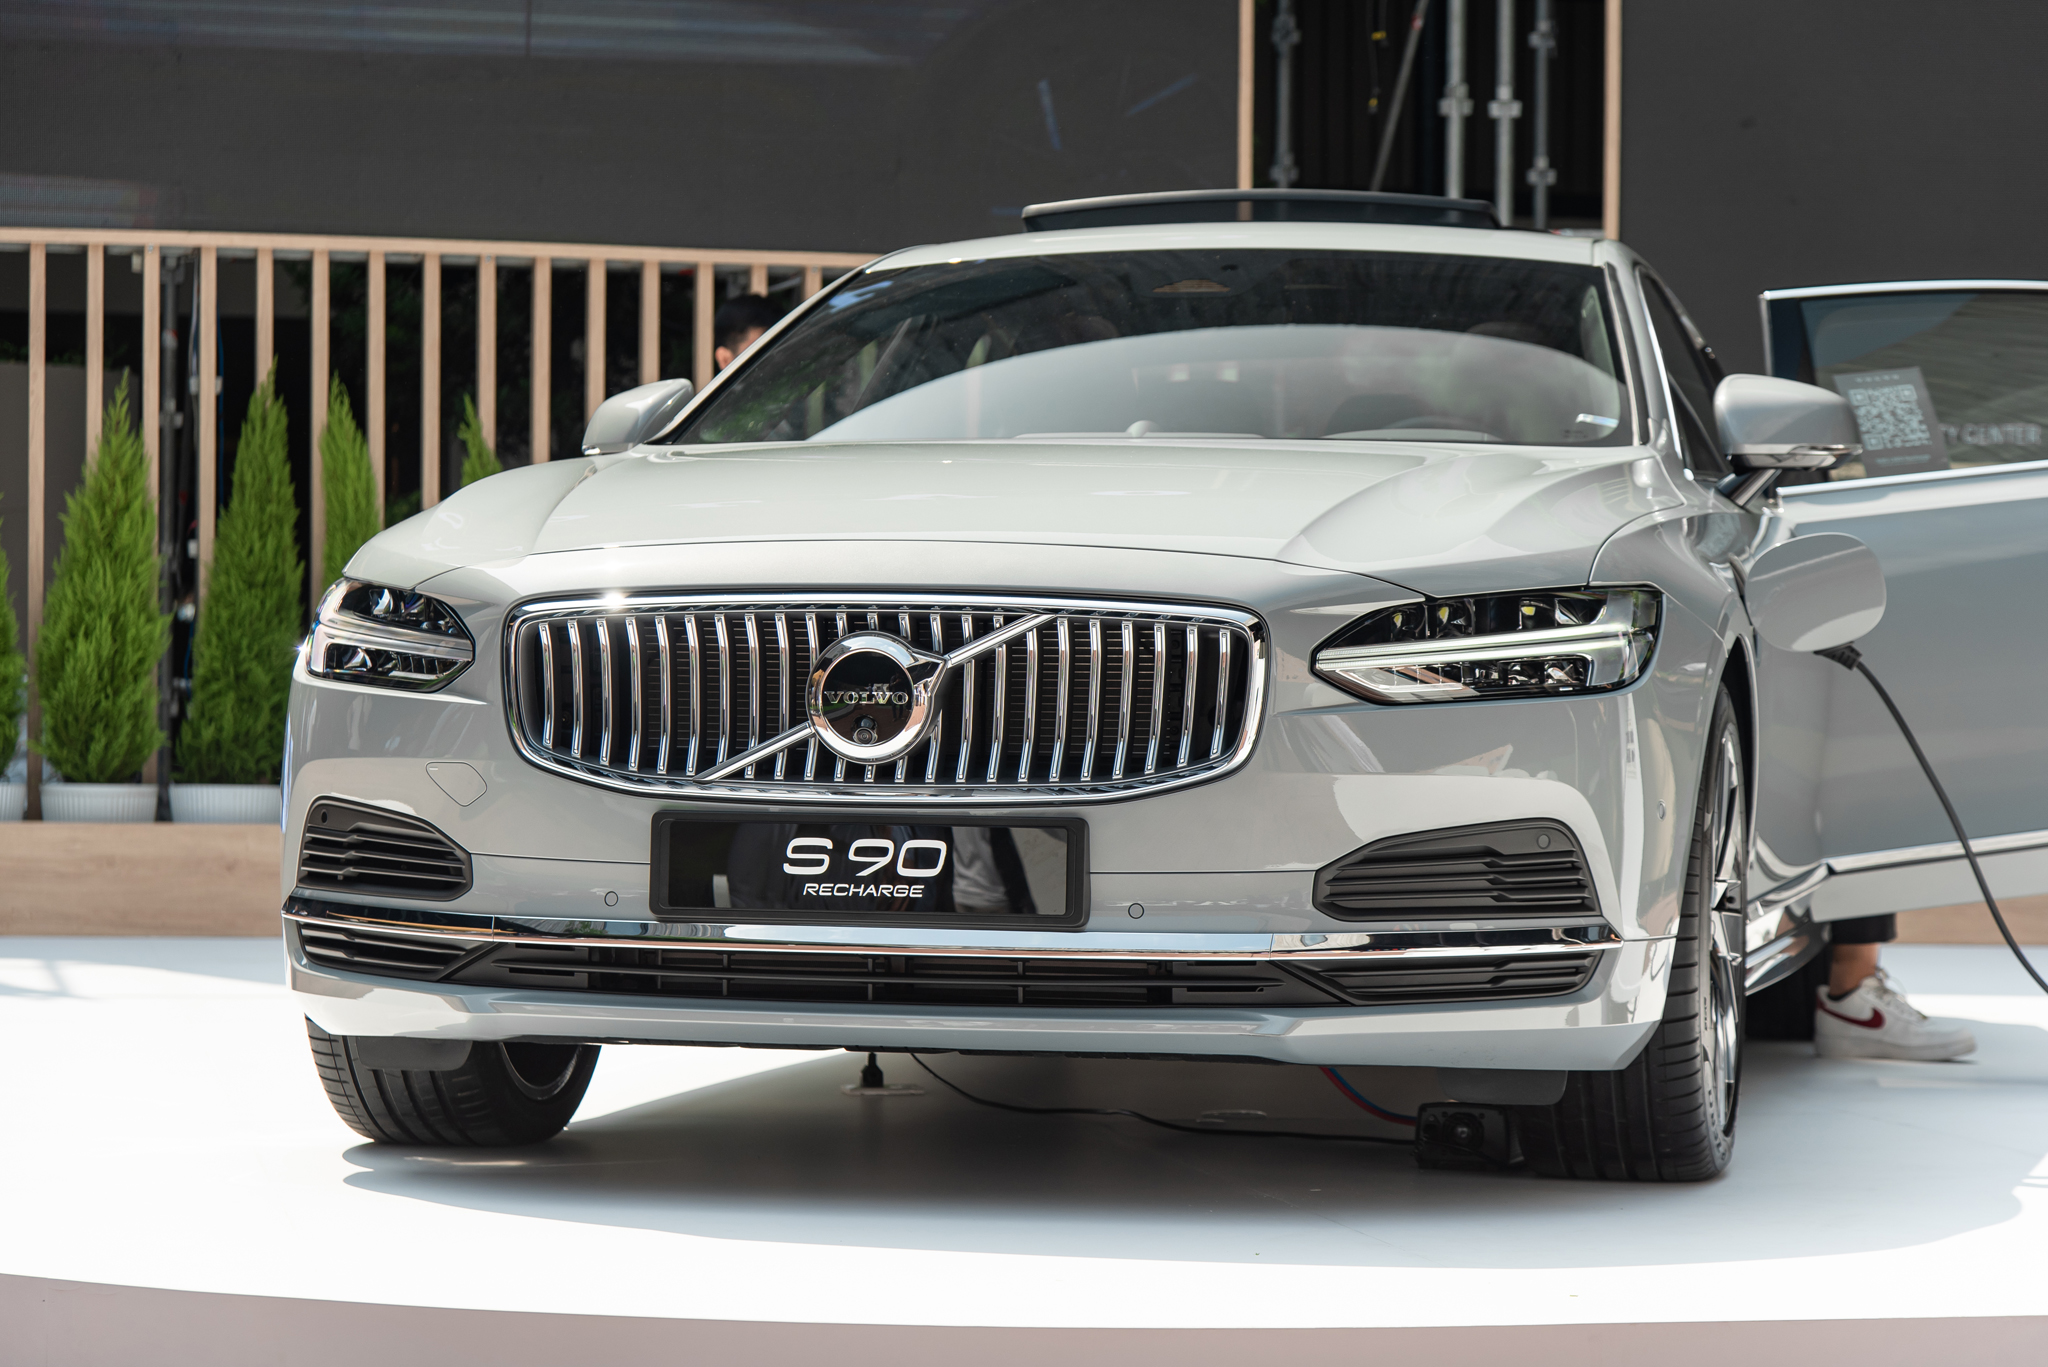 Chi tiết Volvo S90 Recharge vừa ra mắt: Giá 2,89 tỷ đồng, sedan hạng sang cỡ trung rộng và mạnh nhất Việt Nam - Ảnh 3.